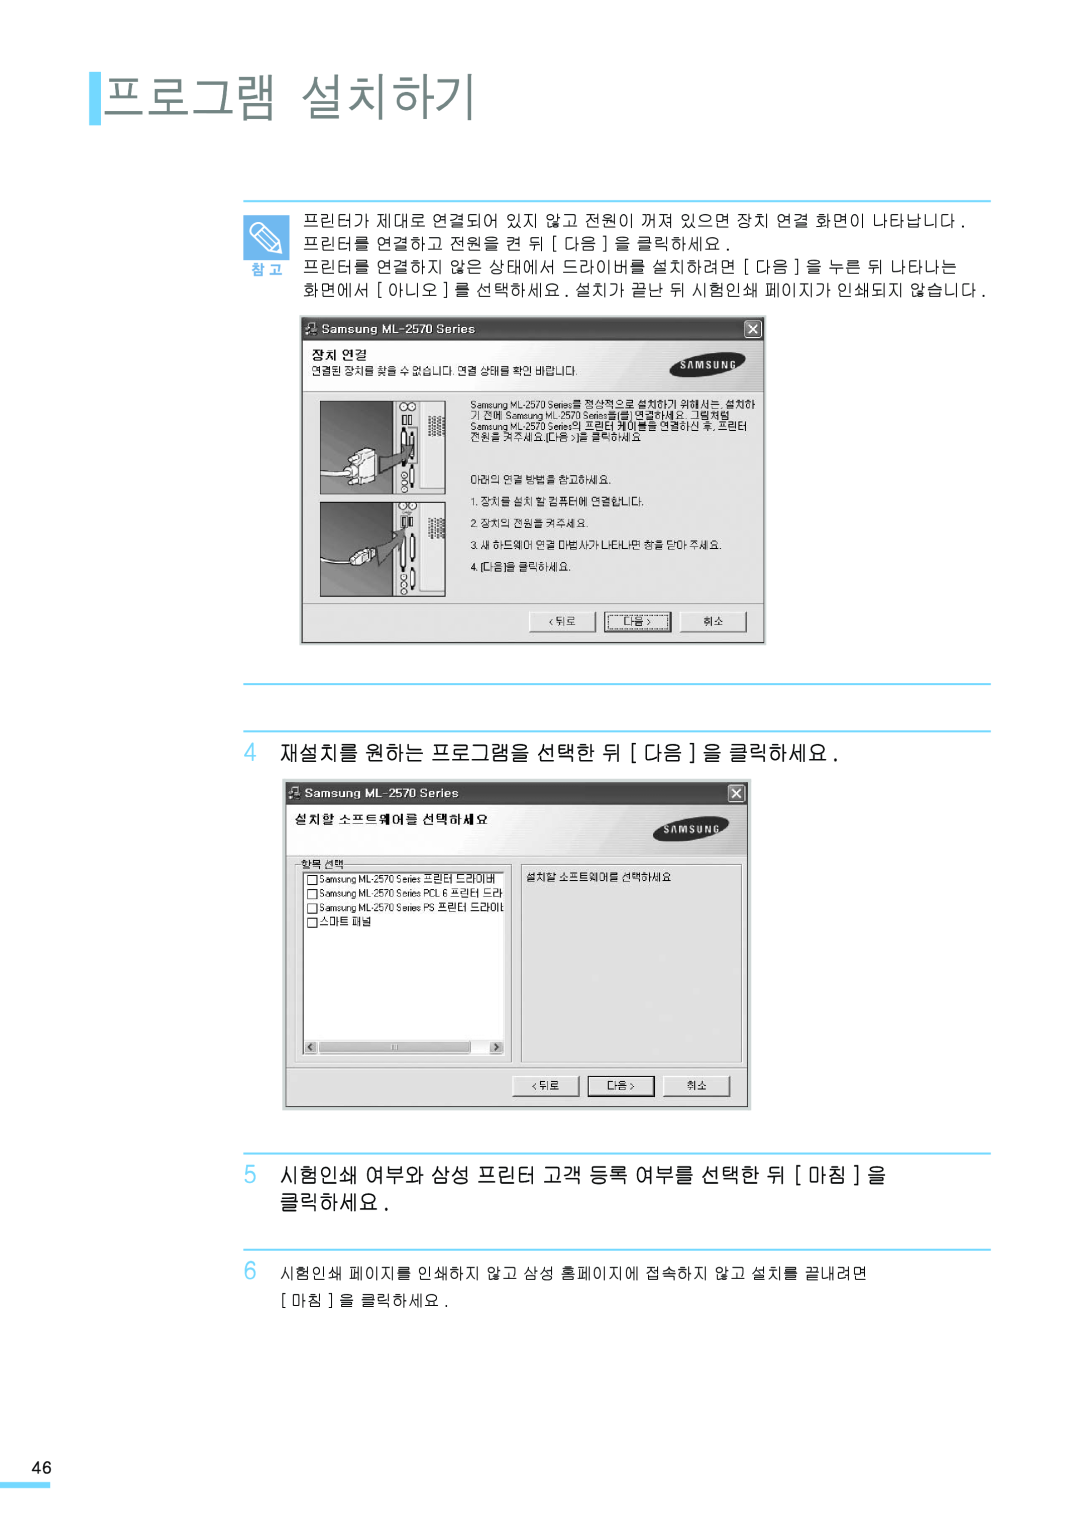 Samsung ML-2571N manual 프로그램 설치하기, 4 재설치를 원하는 프로그램을 선택한 뒤 다음 을 클릭하세요, 5 시험인쇄 여부와 삼성 프린터 고객 등록 여부를 선택한 뒤 마침 을 클릭하세요 